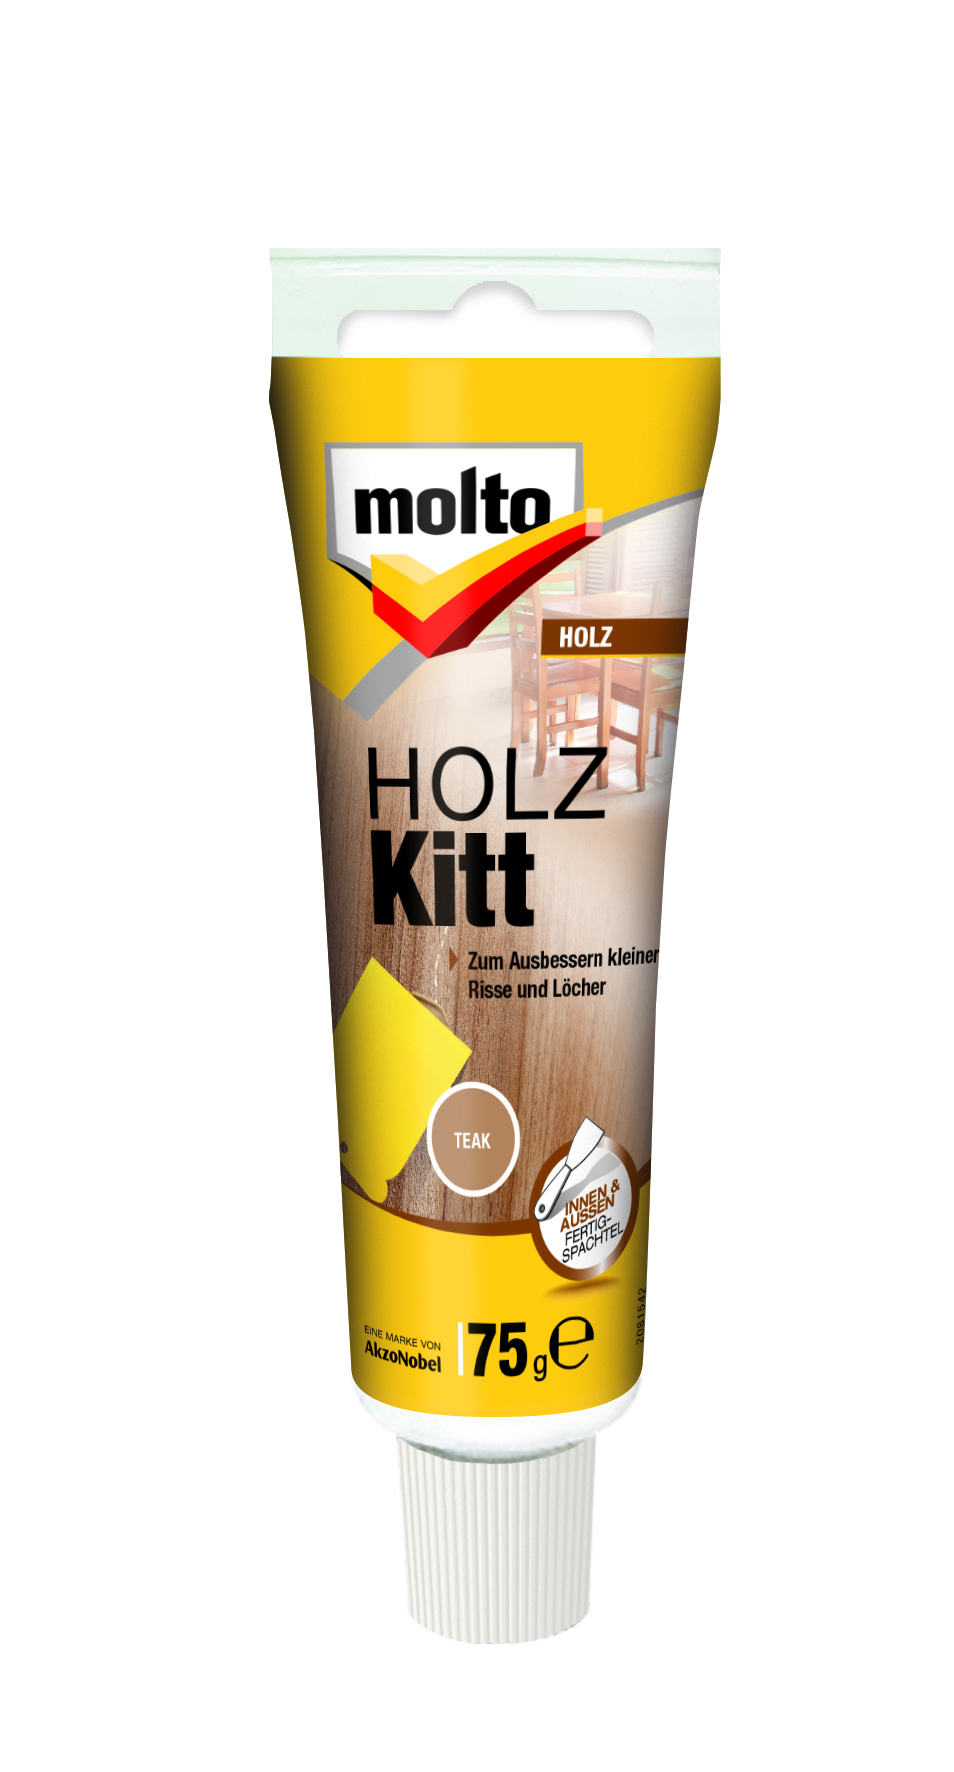 MOLTO HOLZ-KITT TEAUTO-K 75 G